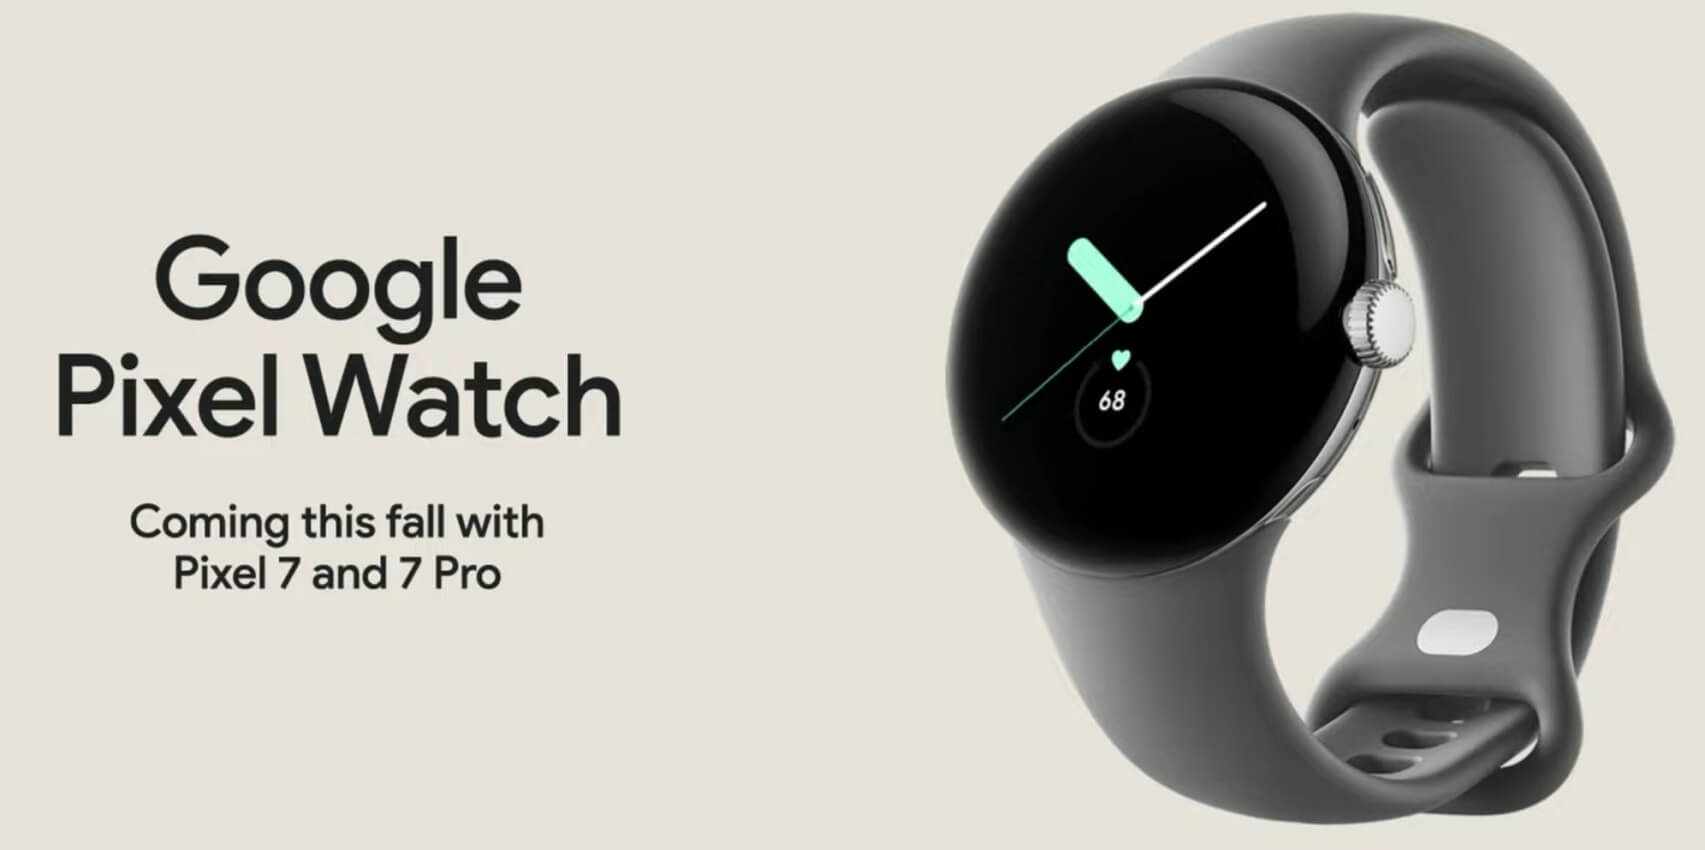 Google Pixel Watch launch soon